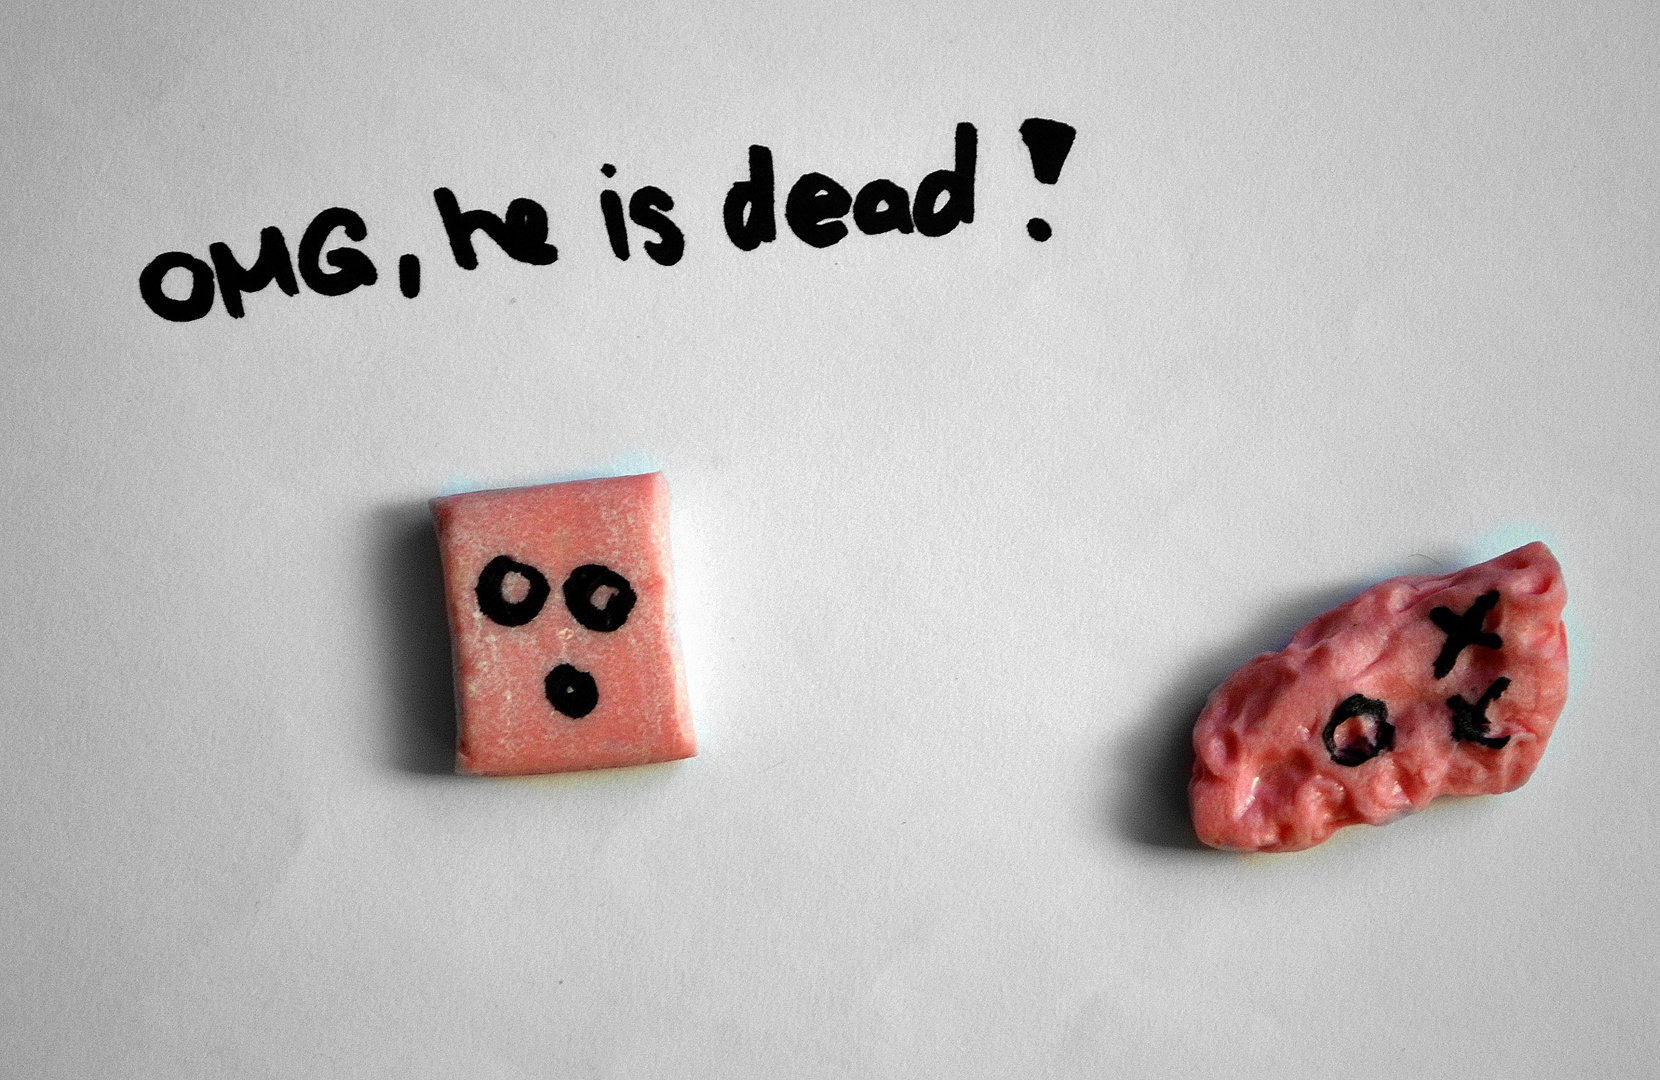 poor chewing-gum.. (: